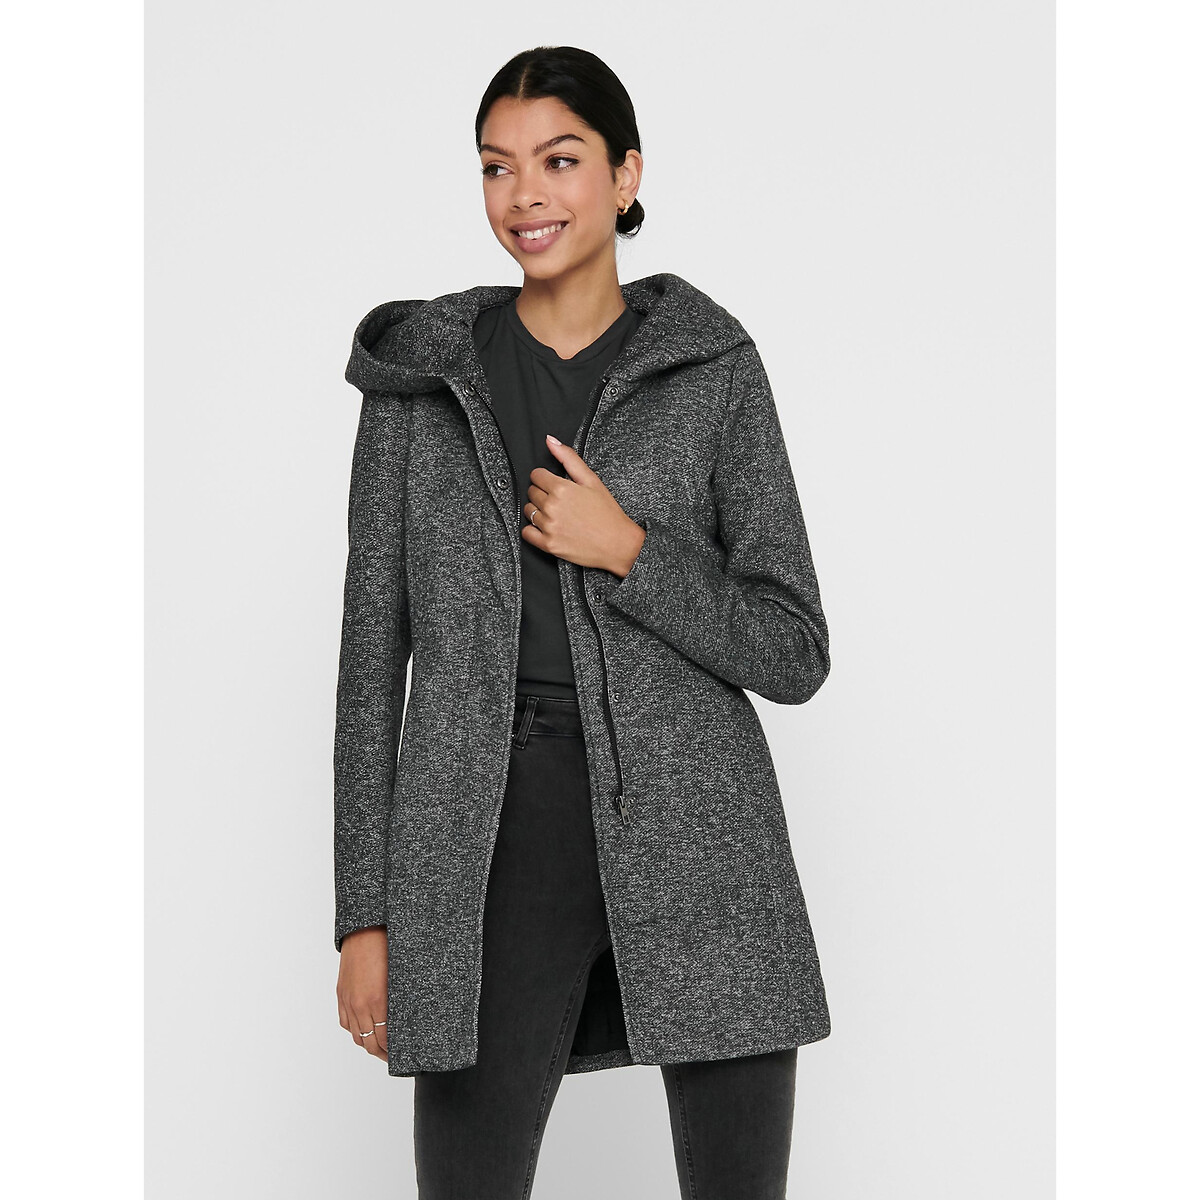 Peachskin hooded jacket, dark grey marl, Only | La Redoute